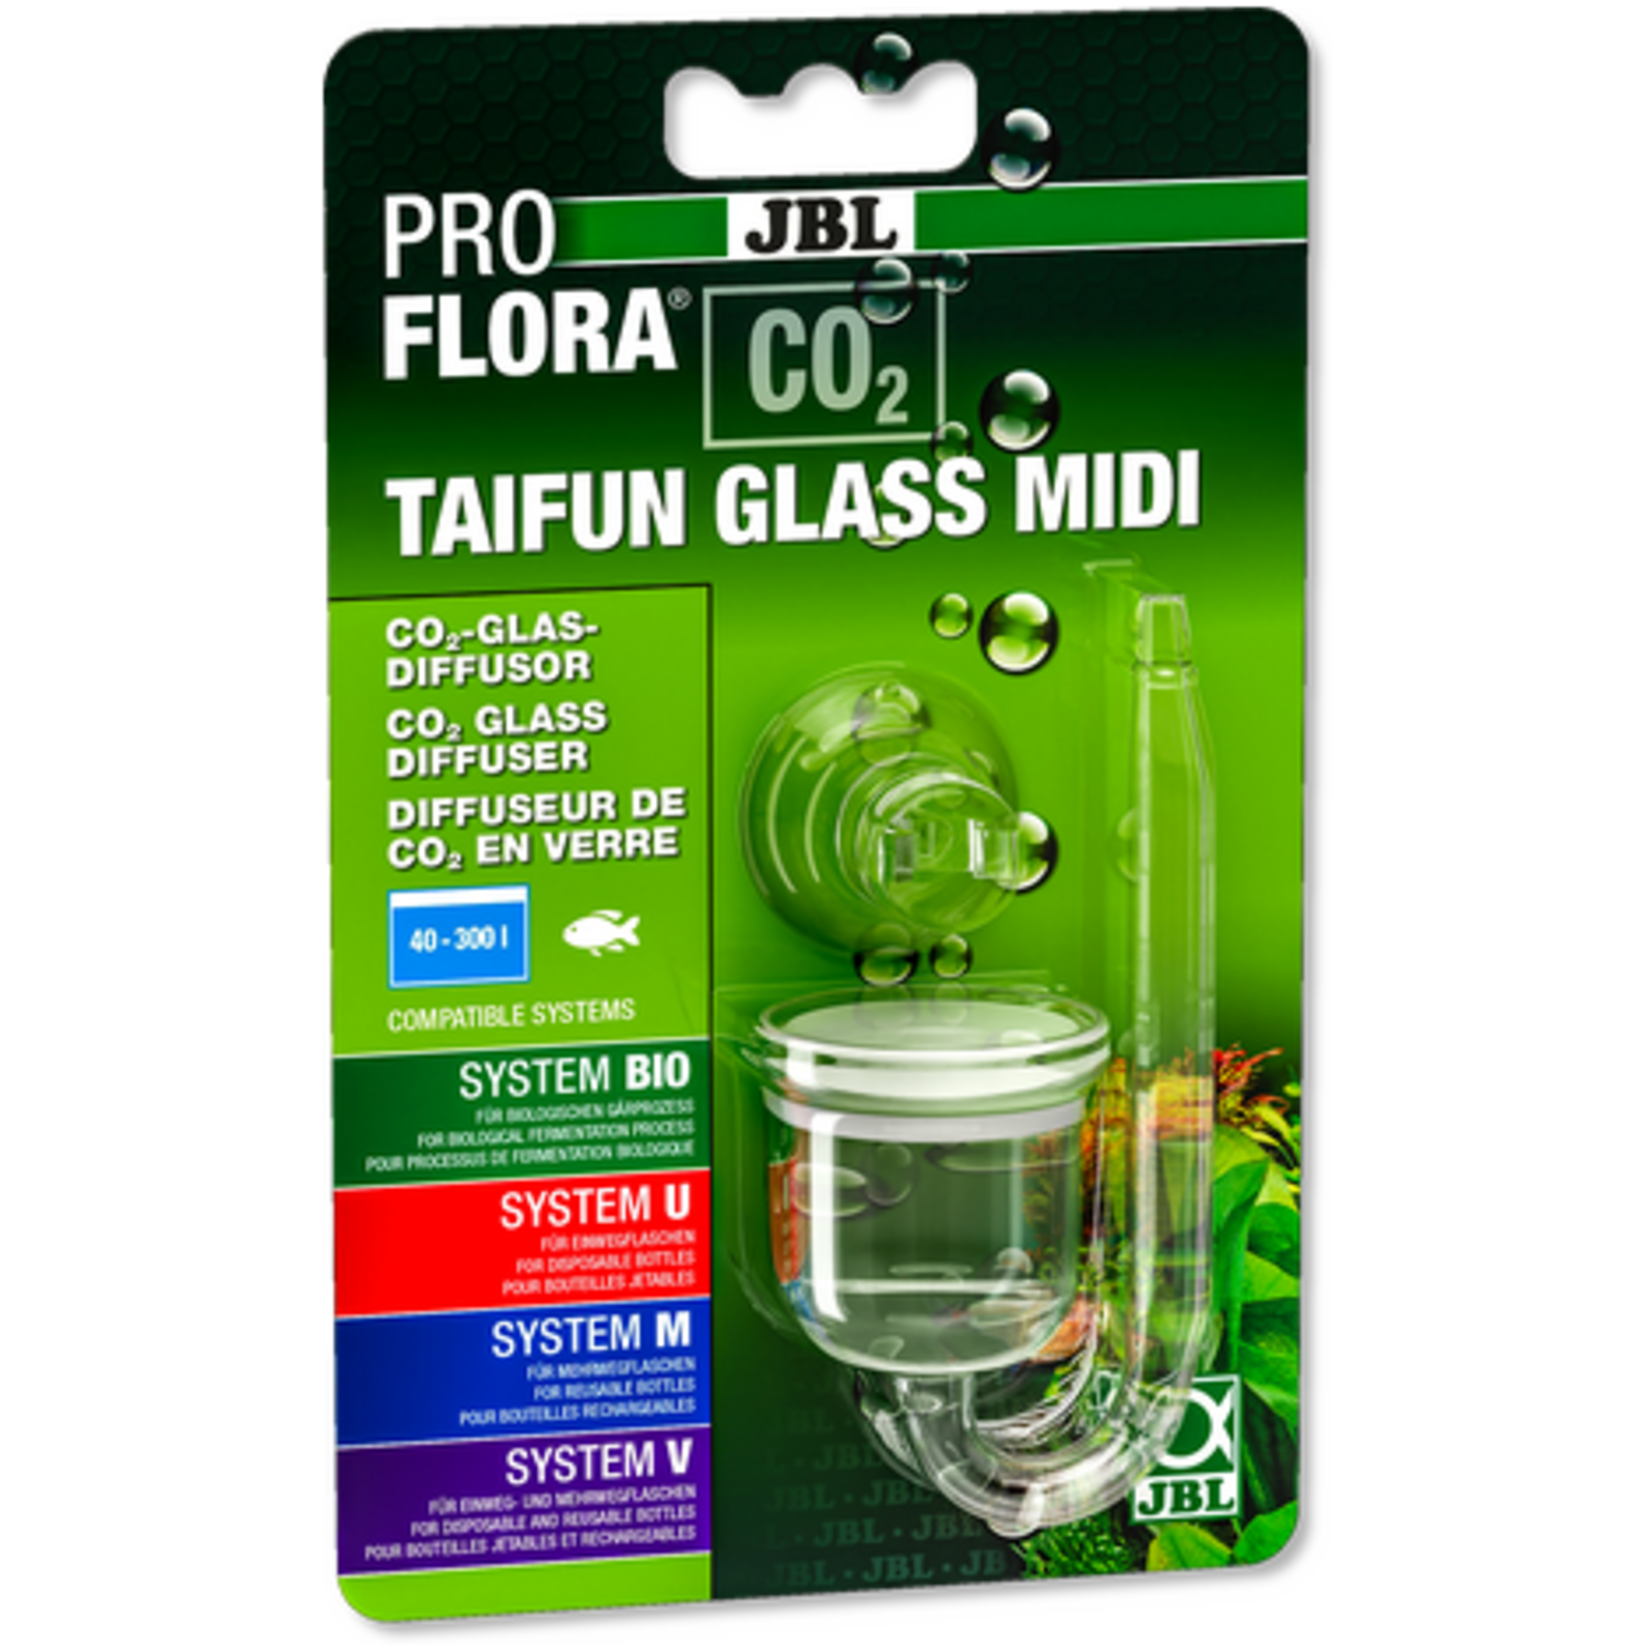 JBL JBL PROFLORA CO2 TAIFUN GLASS